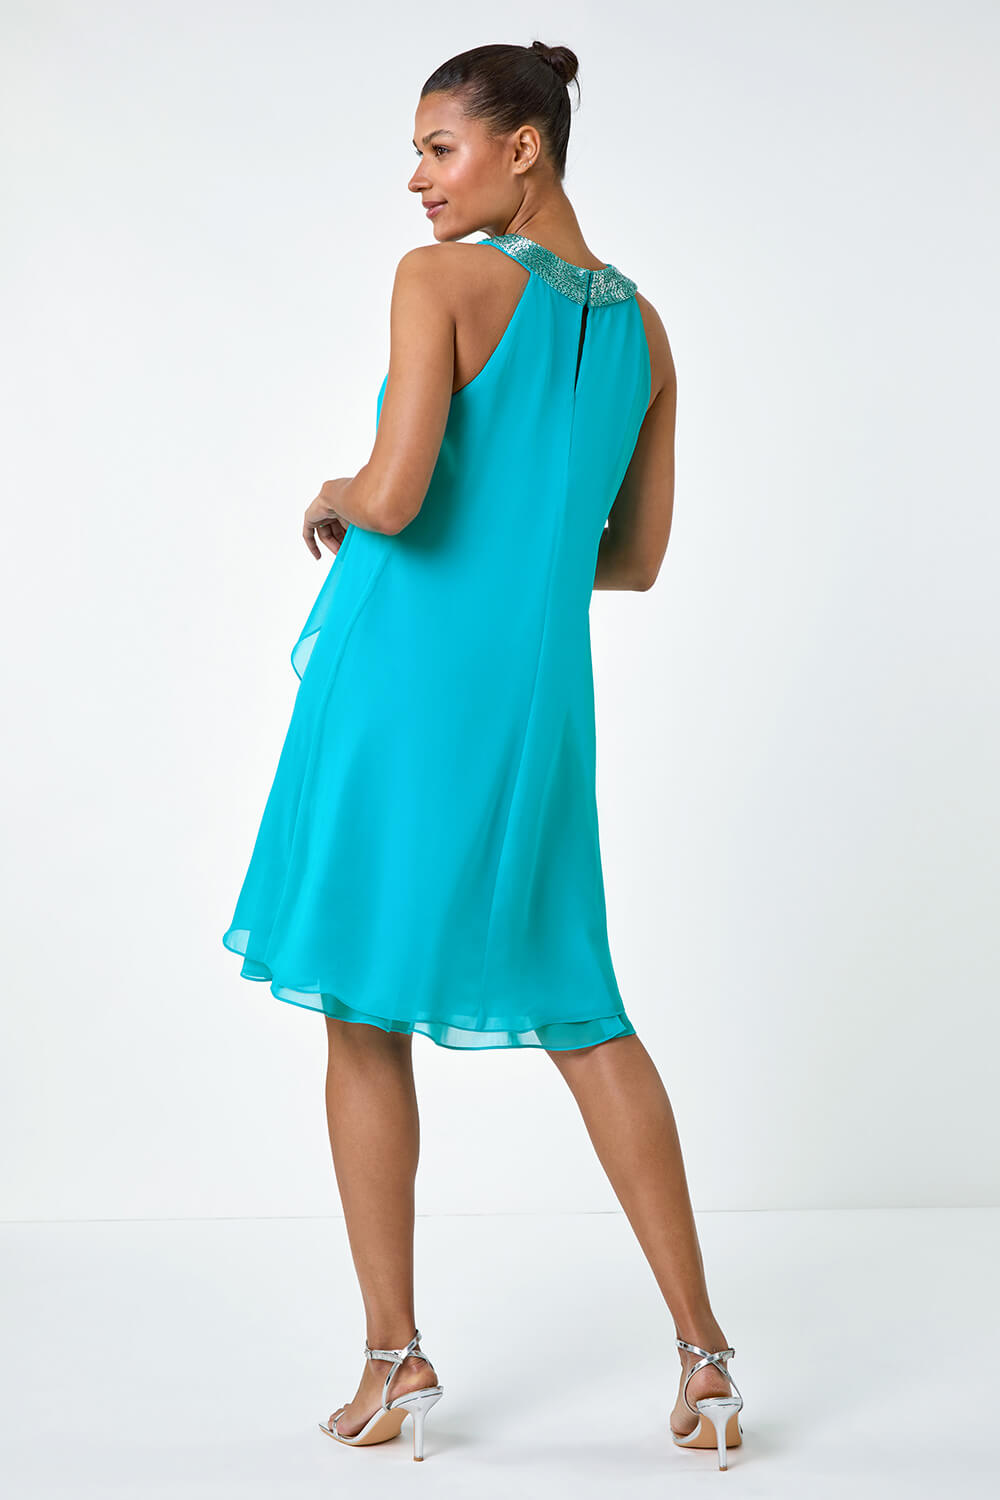 Turquoise Embellished Collar Frilled Chiffon Dress, Image 3 of 5